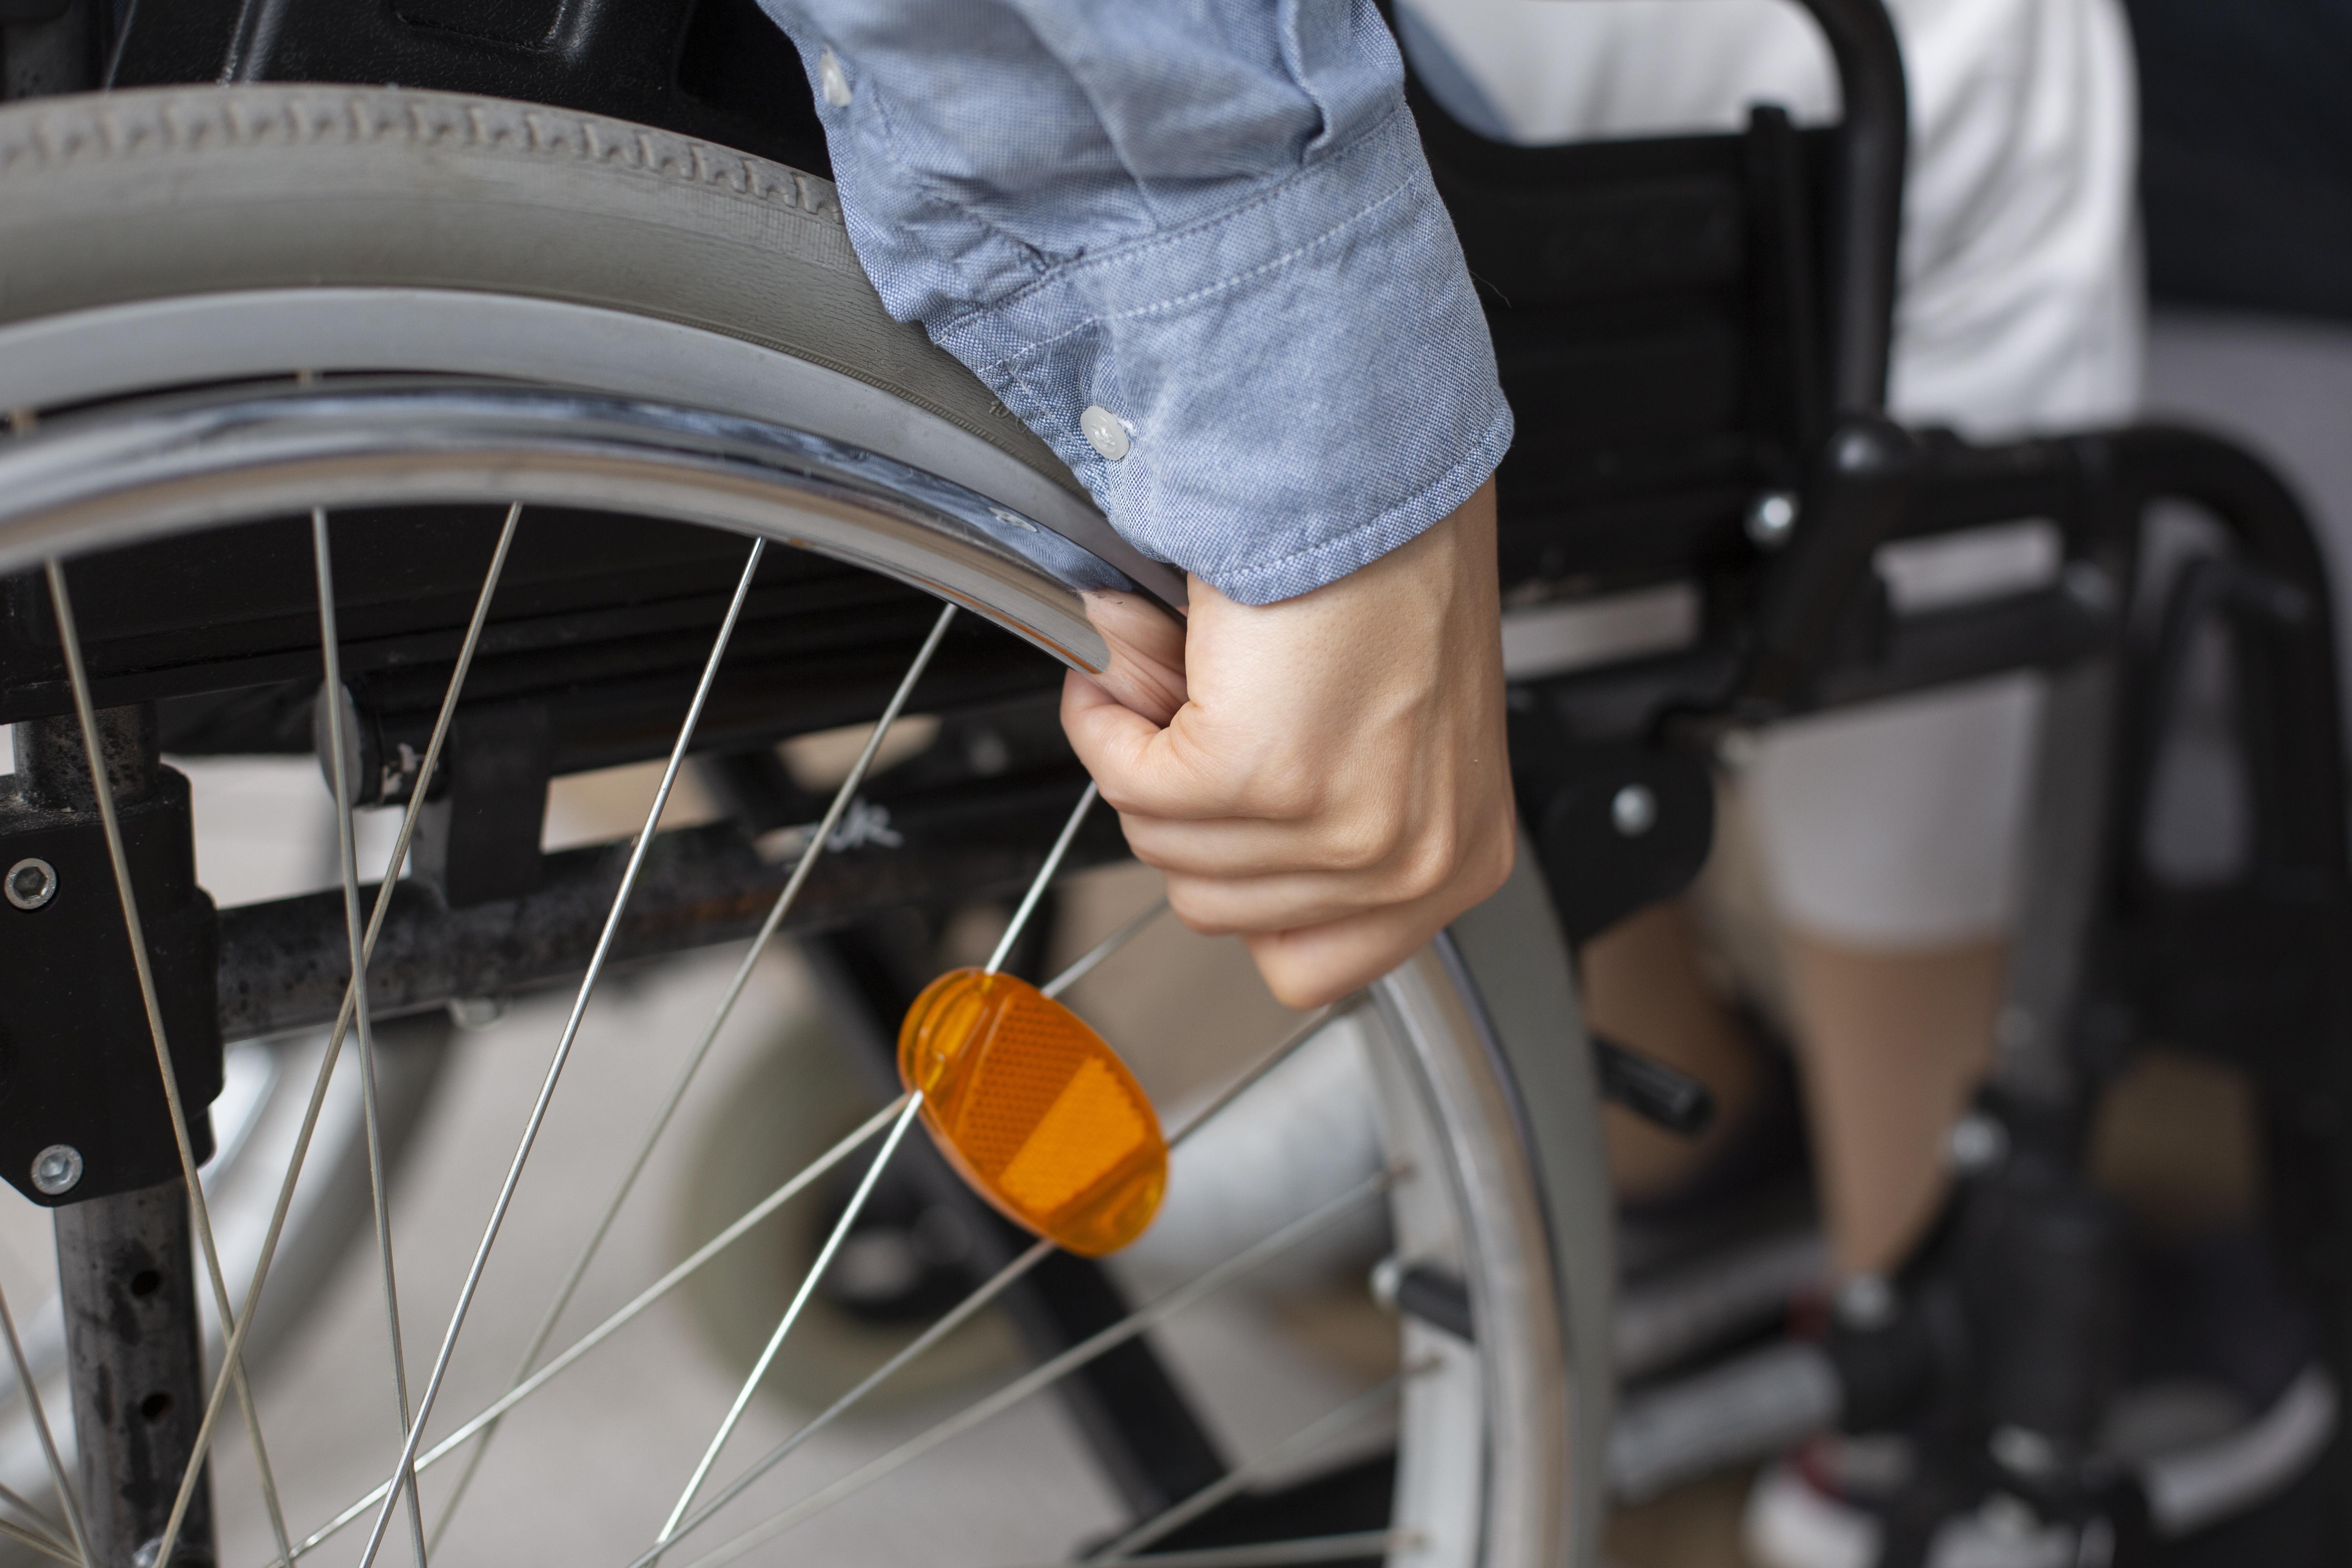 Cerca de mil pessoas com deficiência estavam fora do mercado de trabalho no Acre em 2019, aponta IBGE